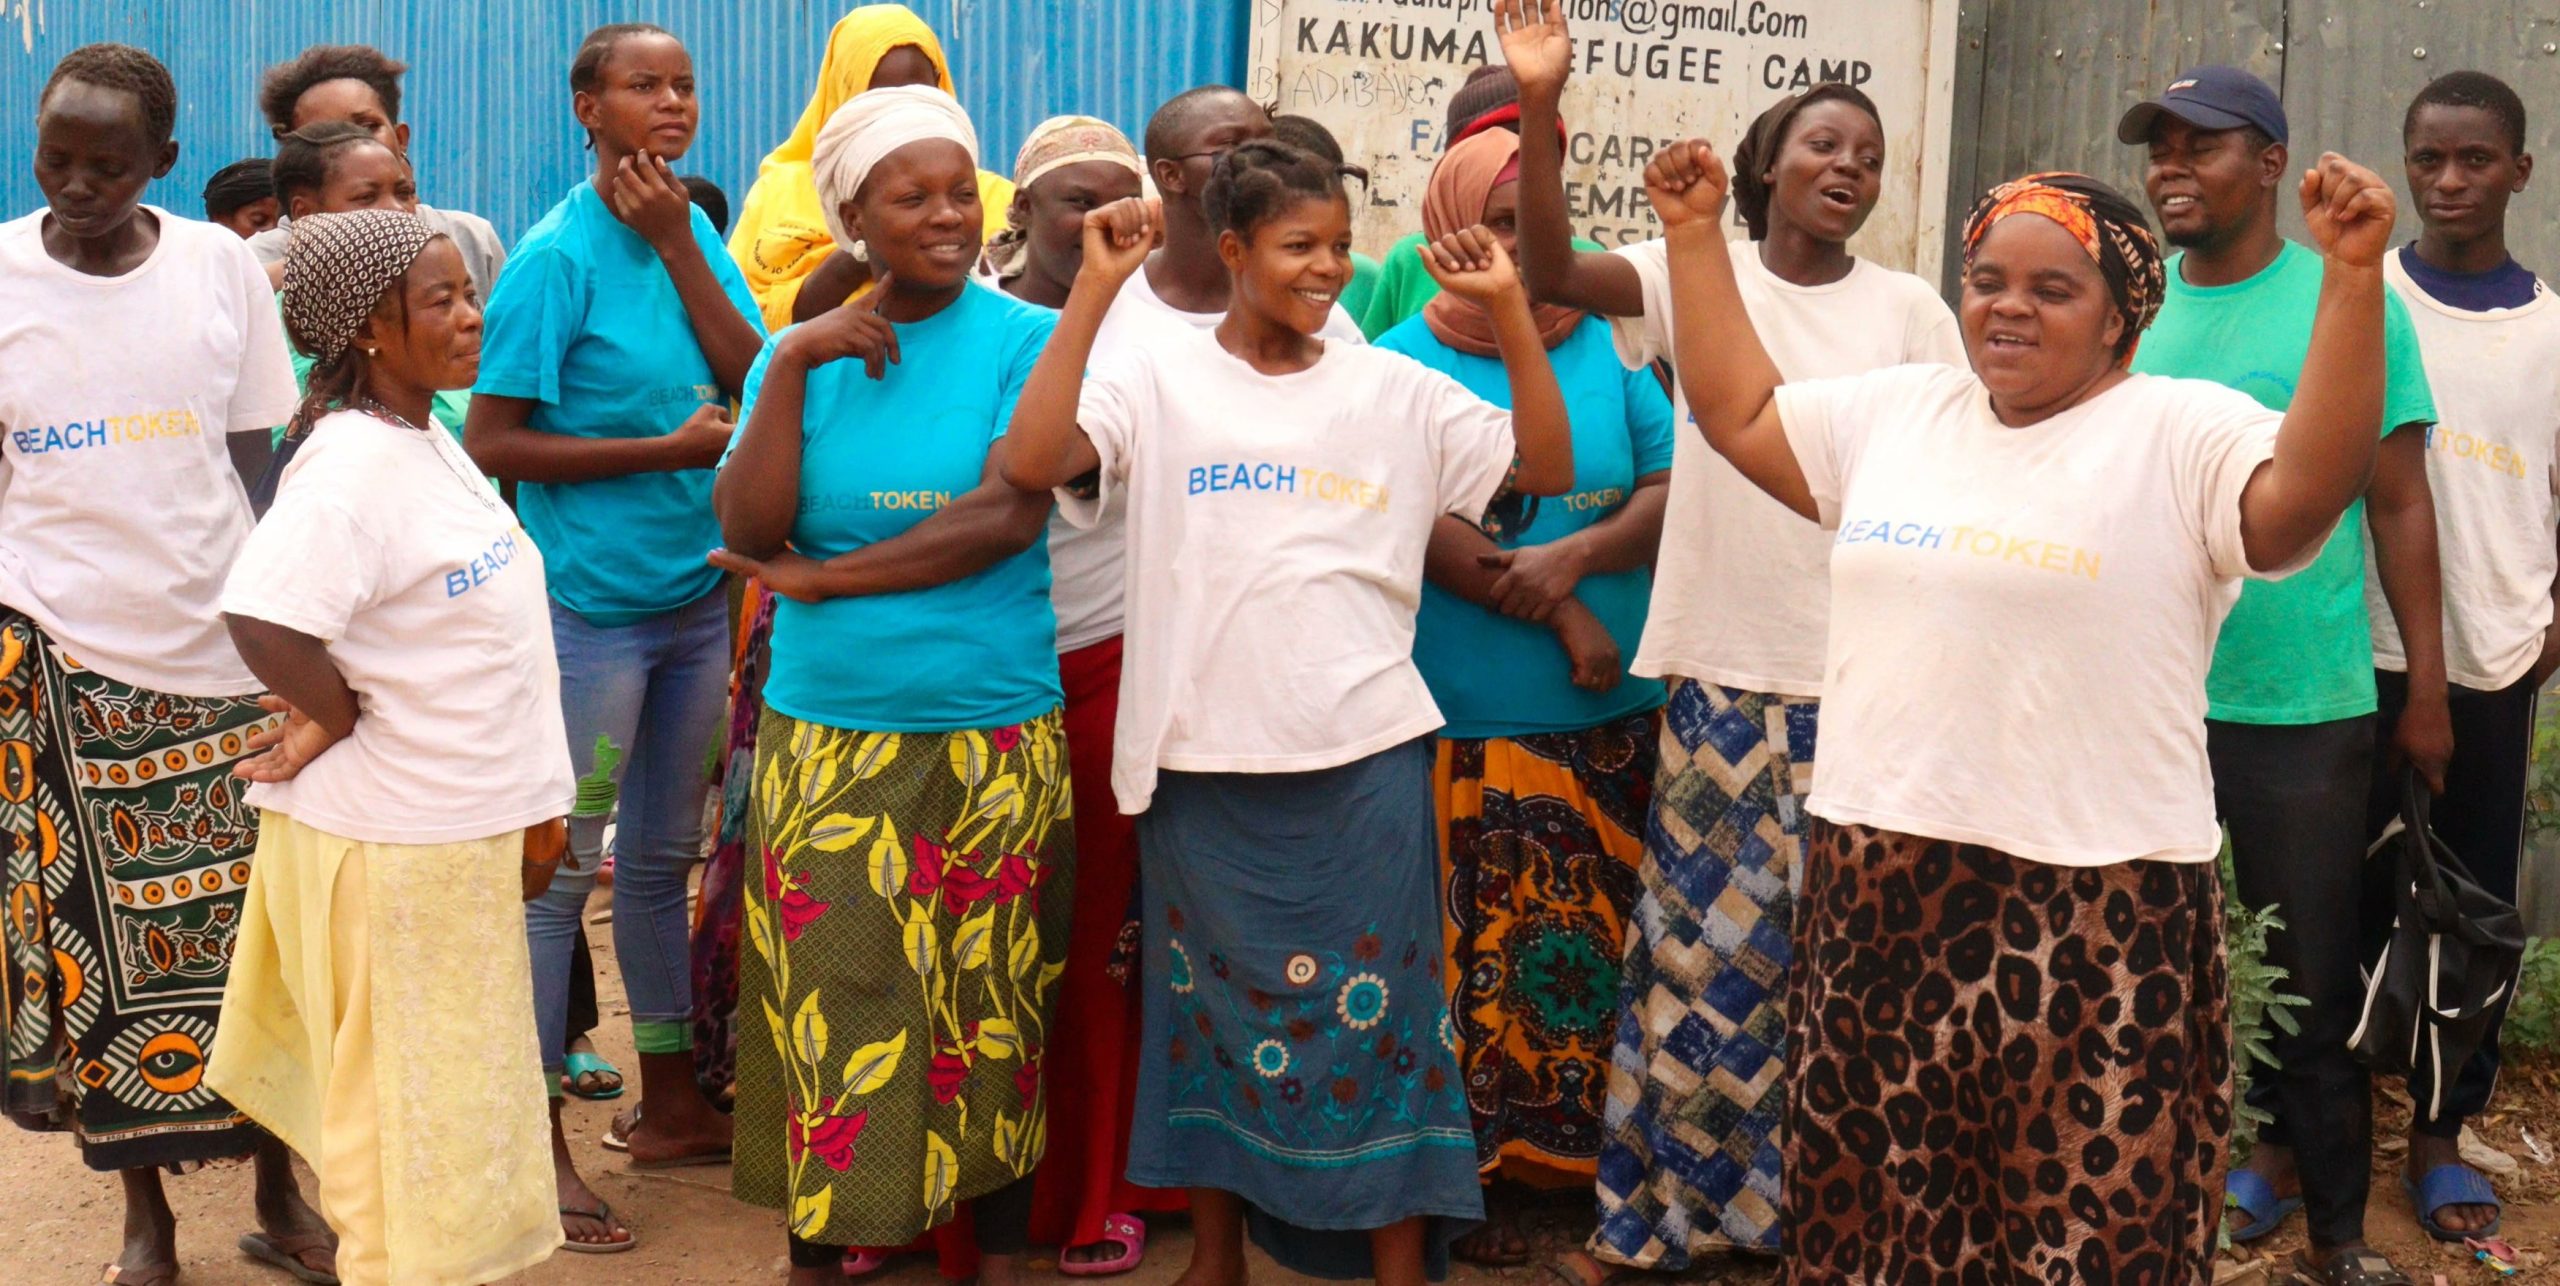 women at kakuma refugee camp